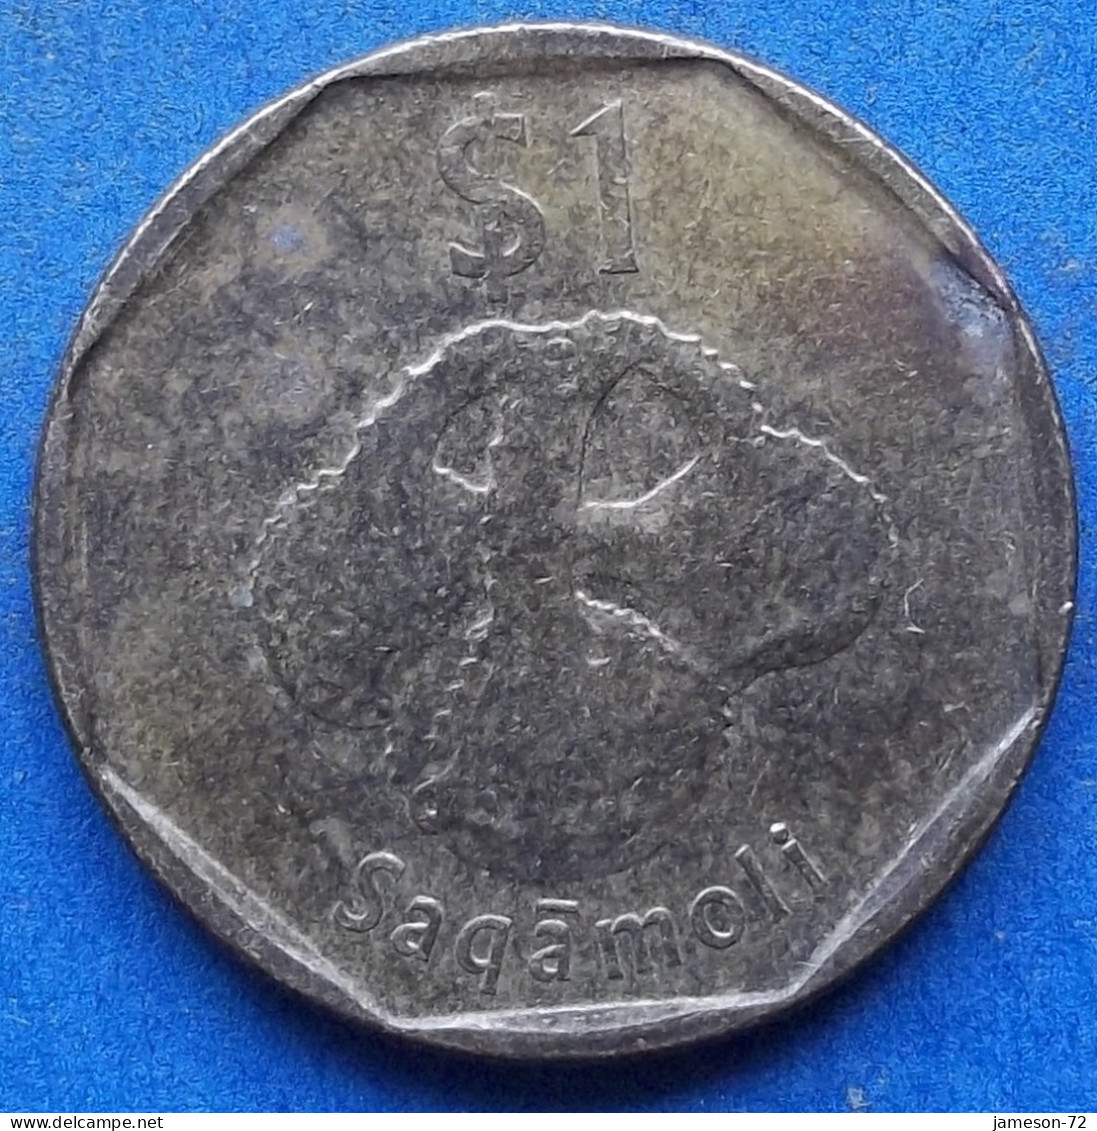 FIJI - 1 Dollar 2012 "Banded Iguana" KM# 336 Elizabeth II Decimal Coinage (1971-2022) - Edelweiss Coins - Fiji